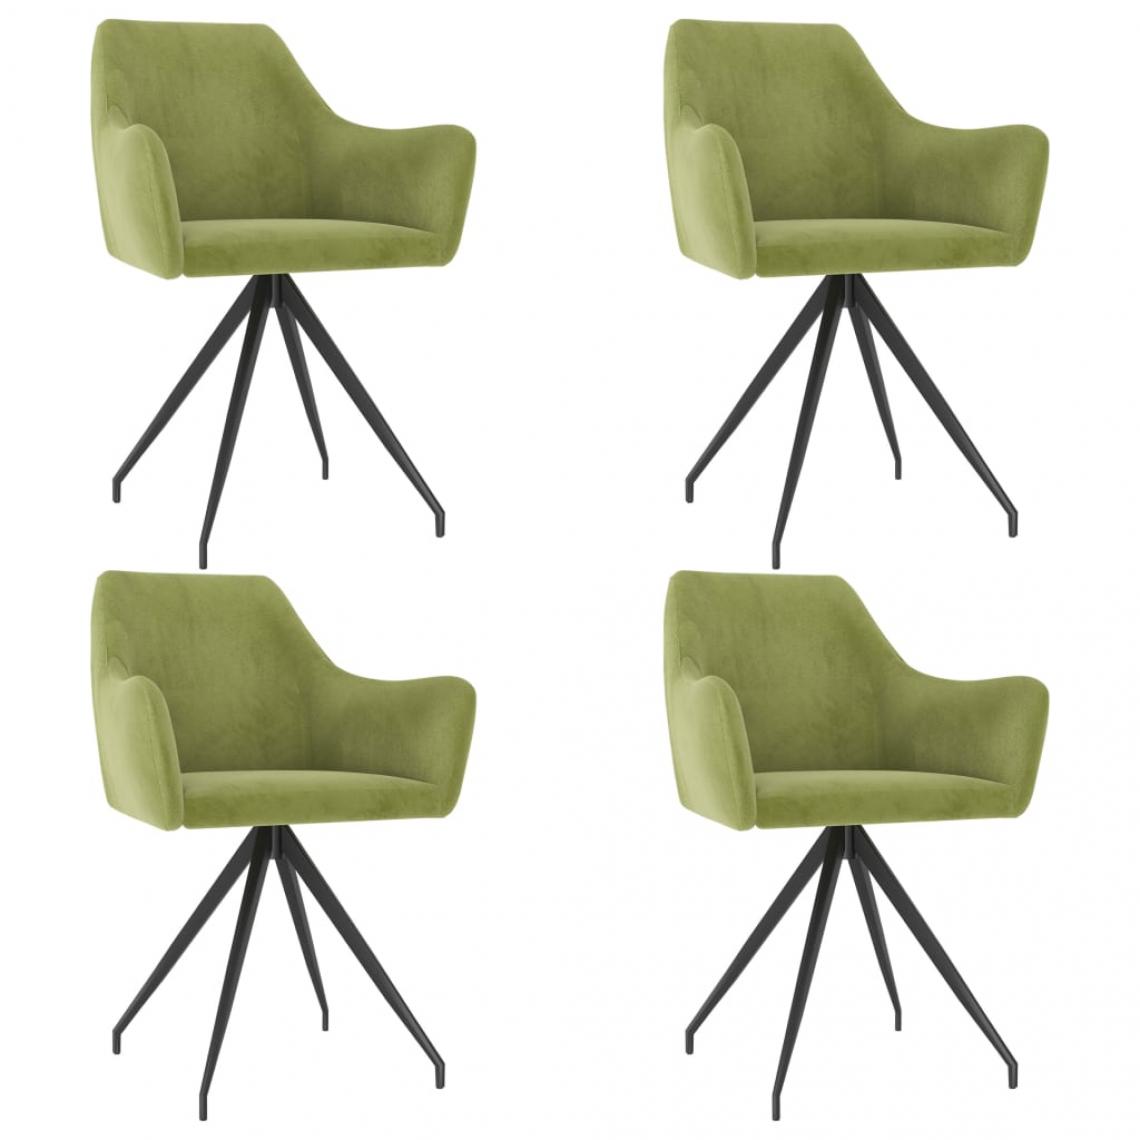 Decoshop26 - Lot de 4 chaises de salle à manger cuisine design moderne velours vert clair CDS022017 - Chaises